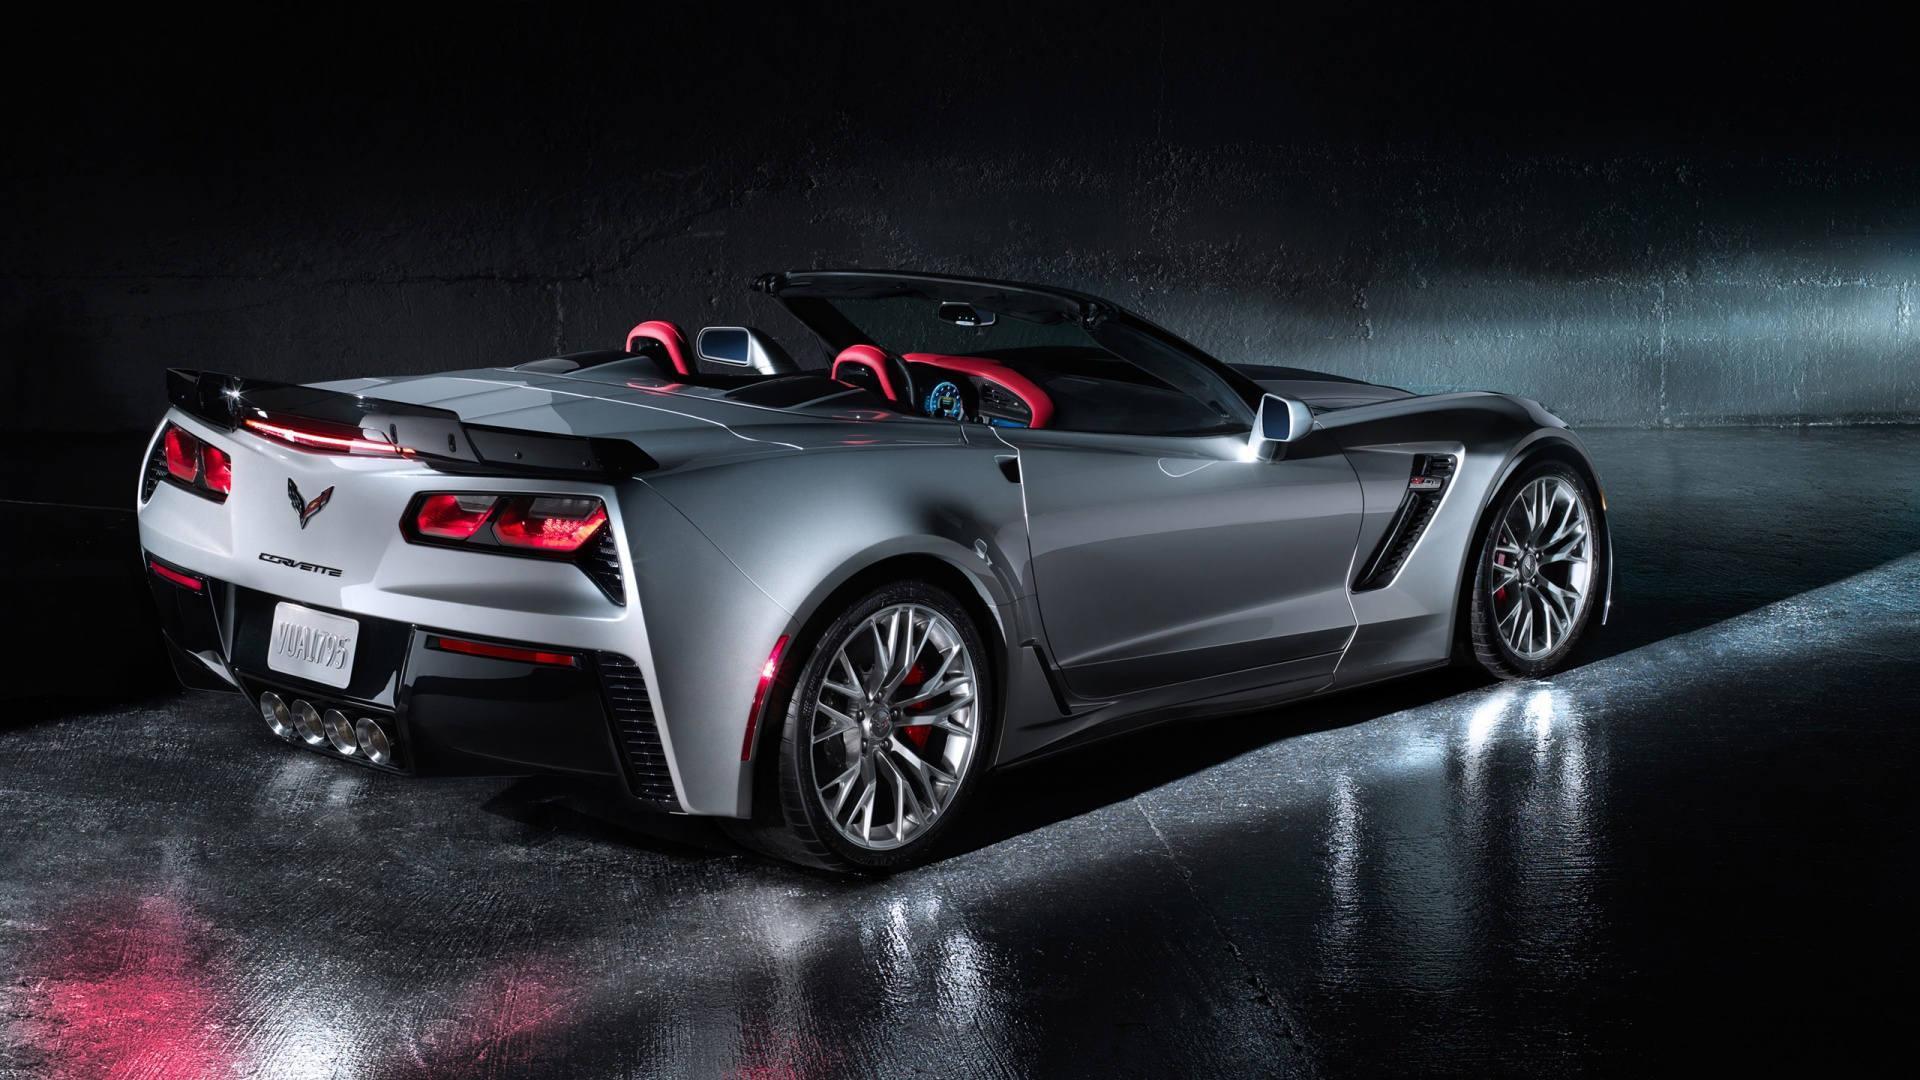 Corvette Concept Car